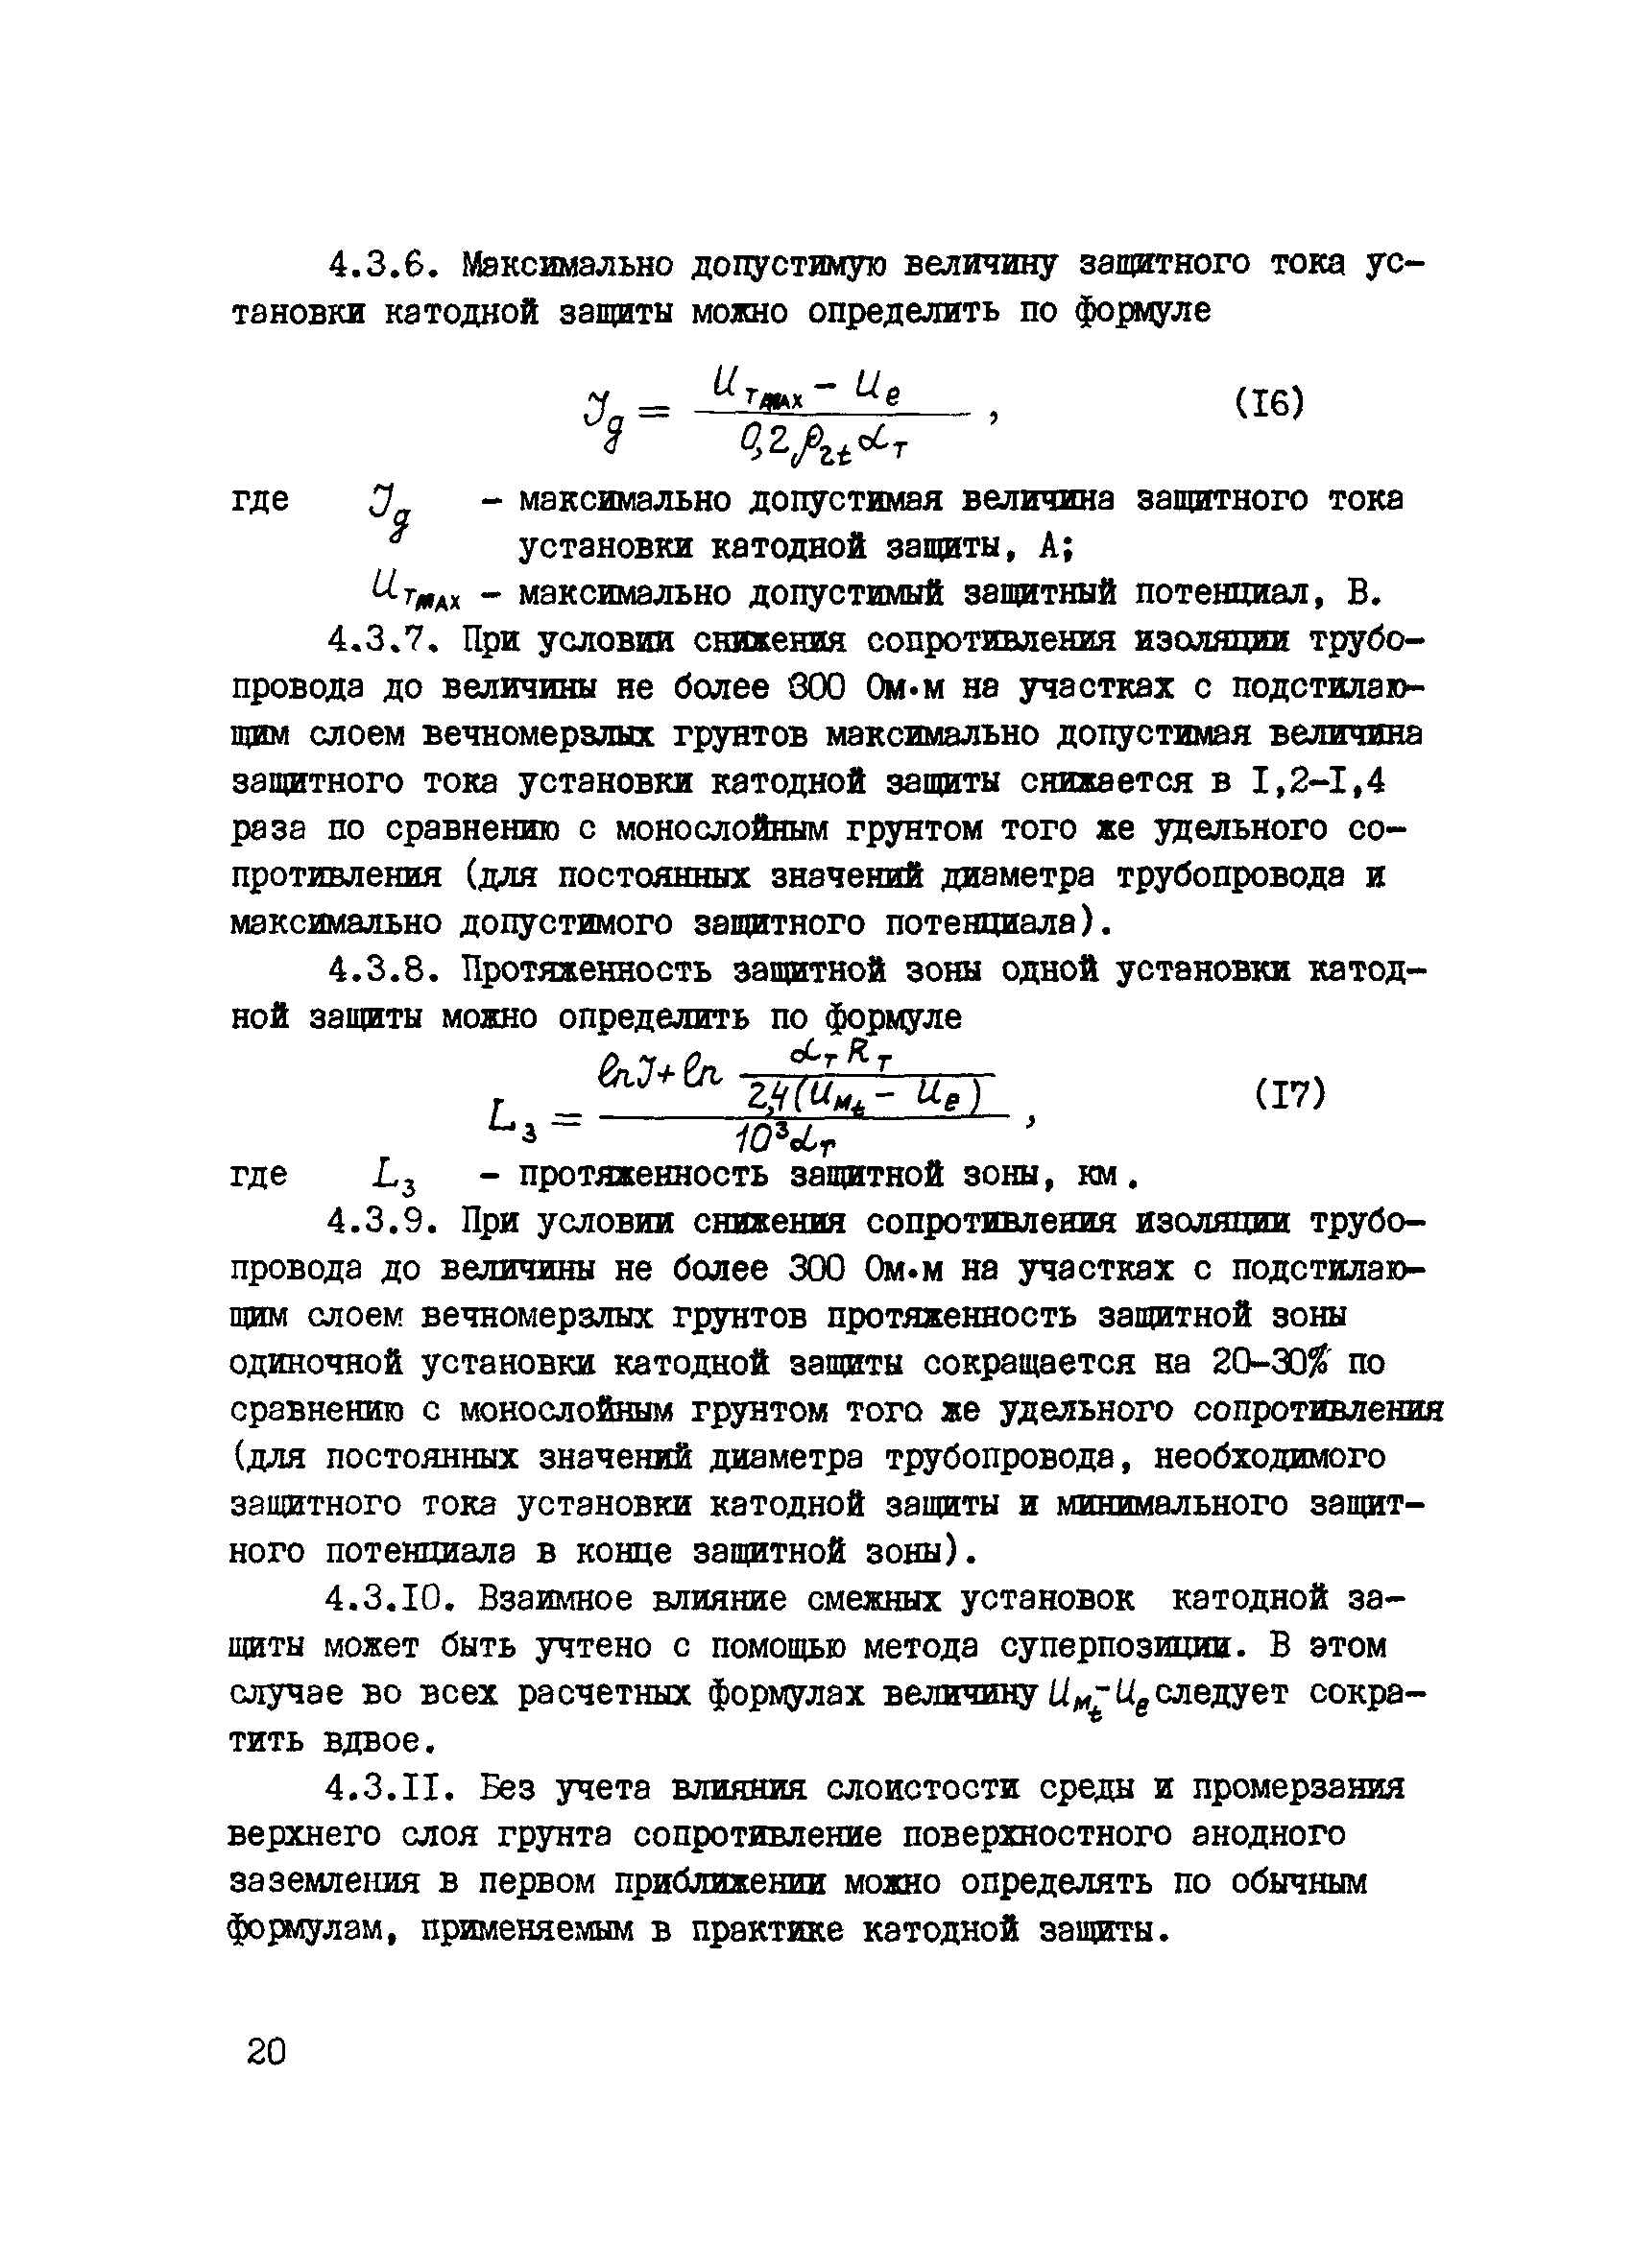 ВСН 2-71-76